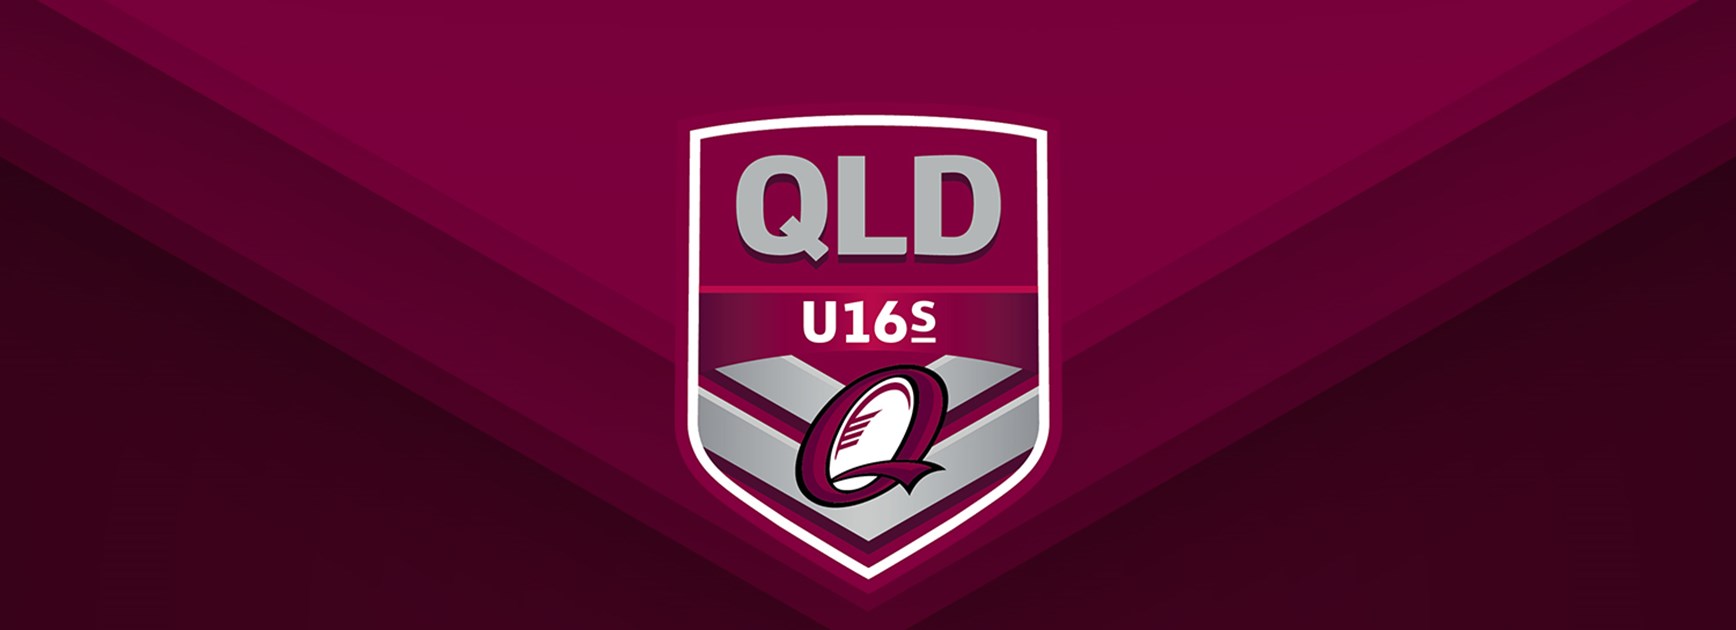 Queensland Under 16 team